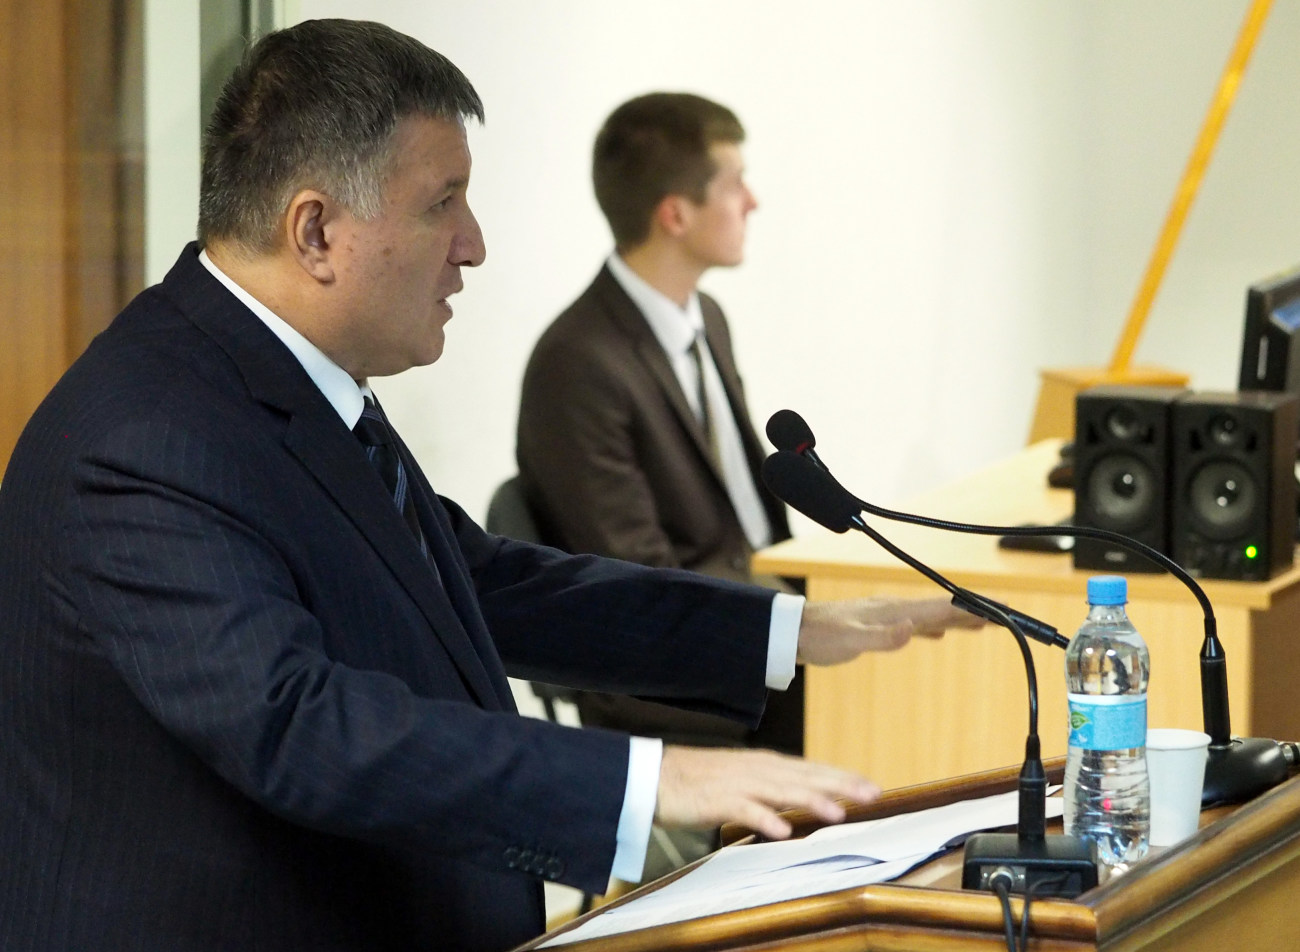 Авакова и Яценюка допросили в суде по делу Януковича